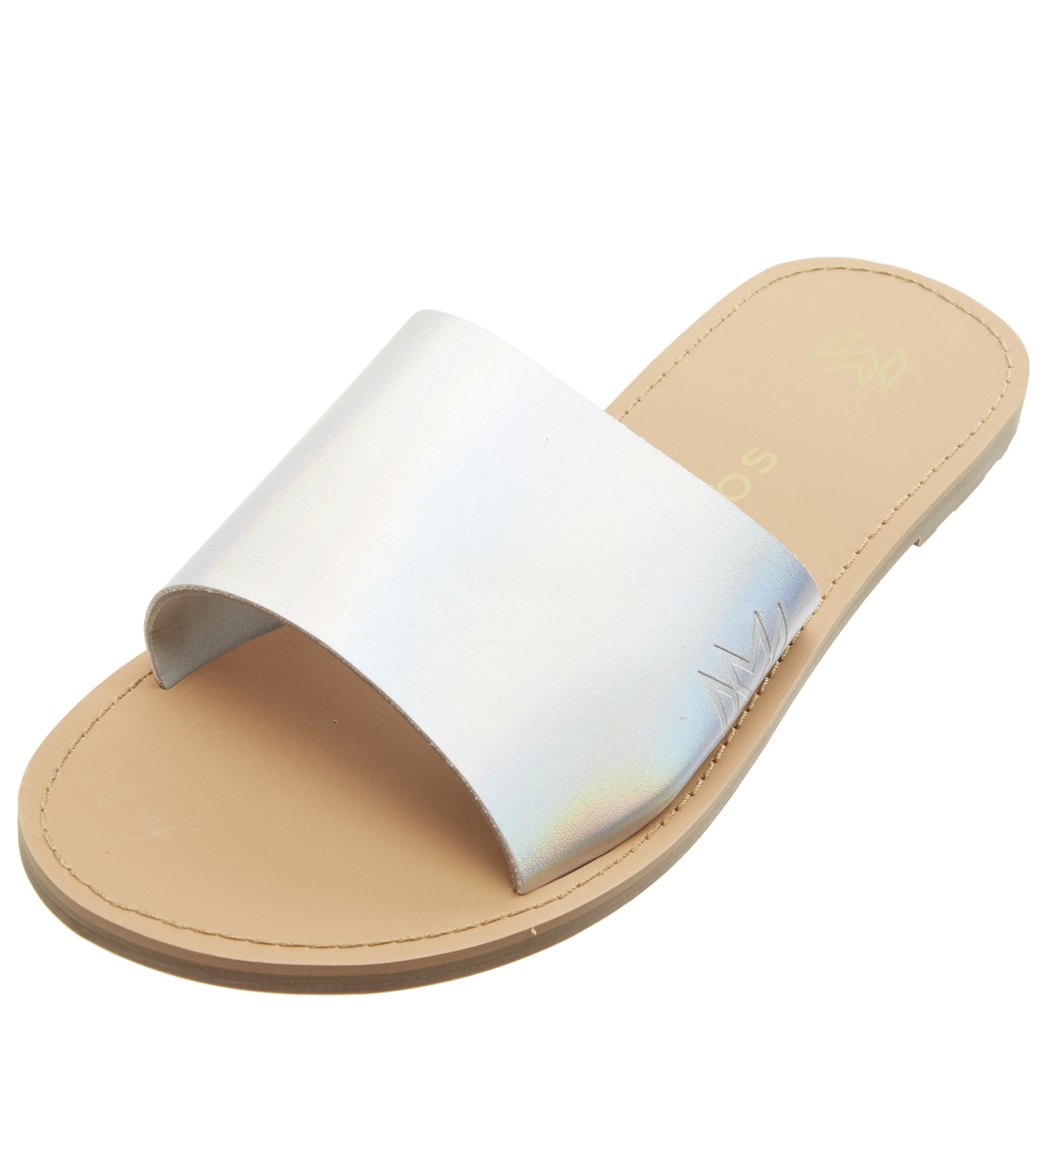 Malvados Women's Taylor Slides Sandals - Platinum 5/6 - Swimoutlet.com